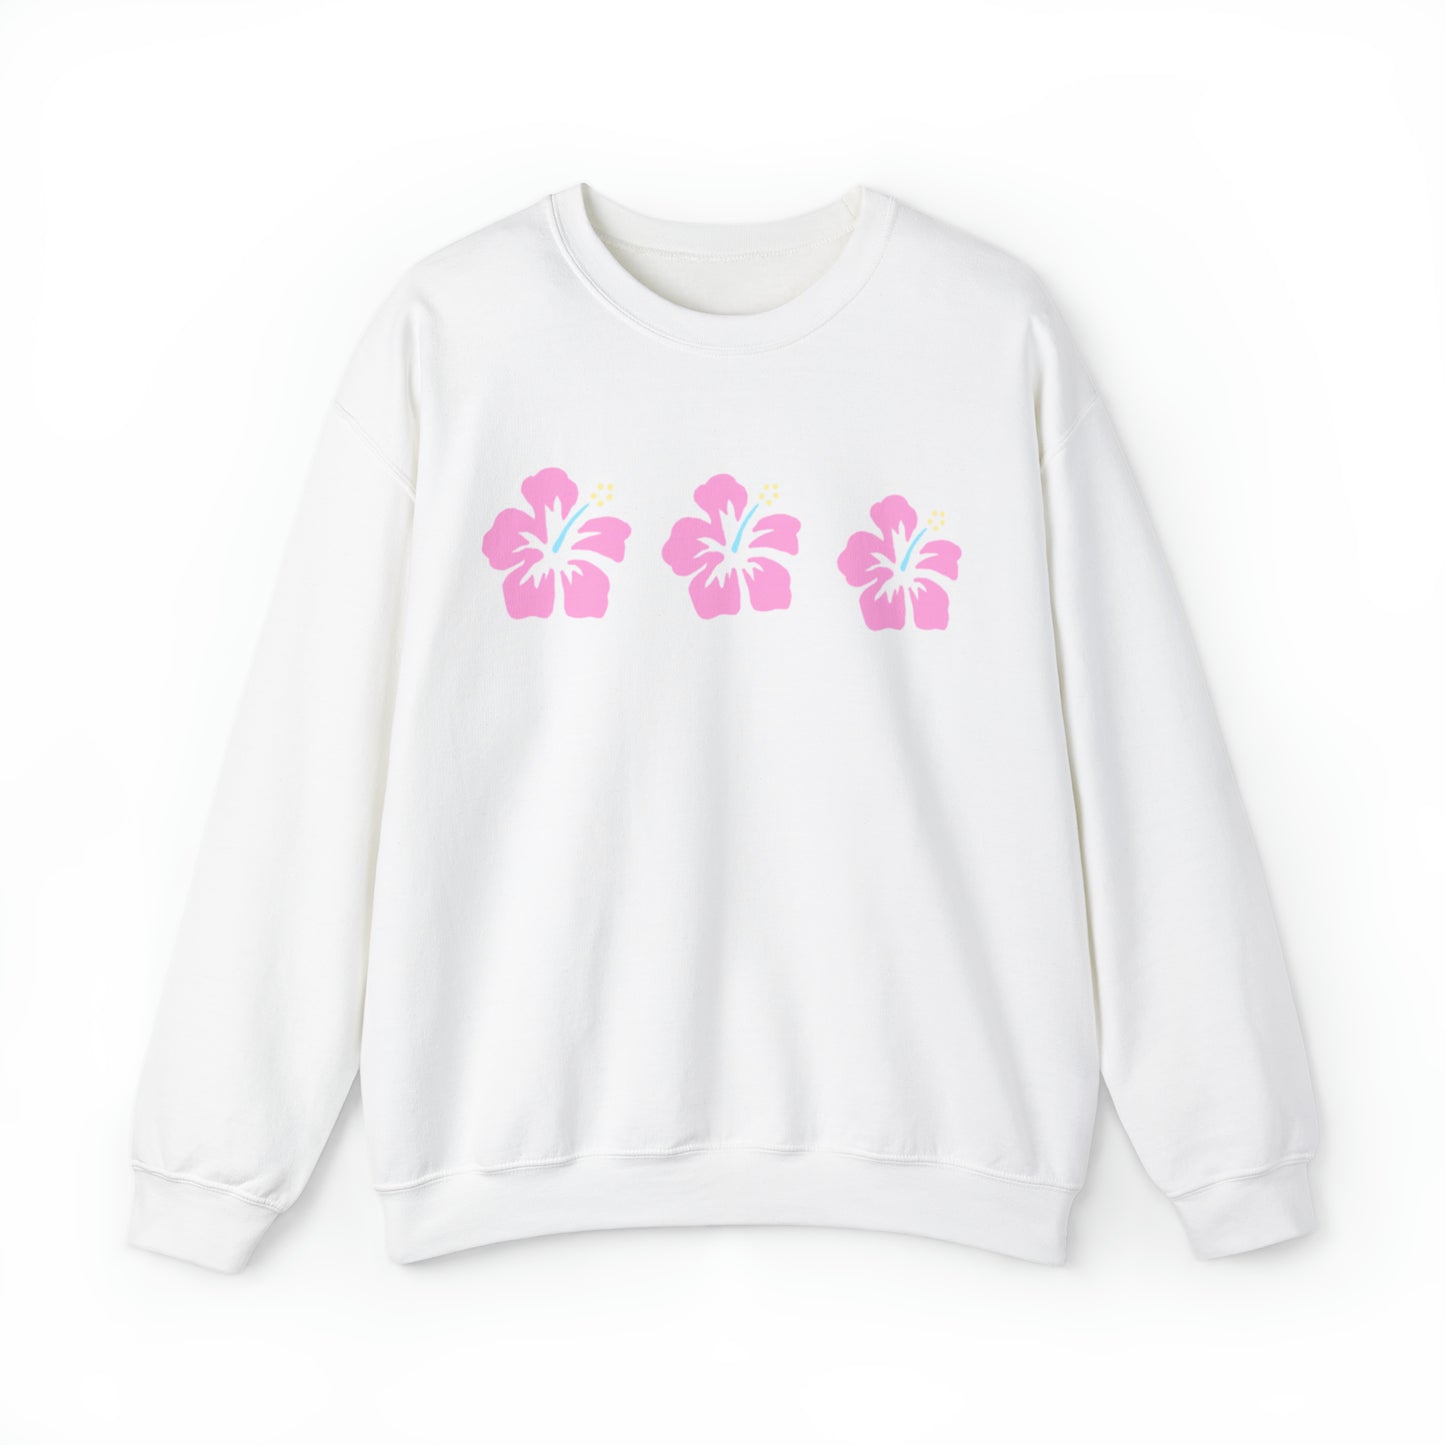 Hibiscus sweatshirt